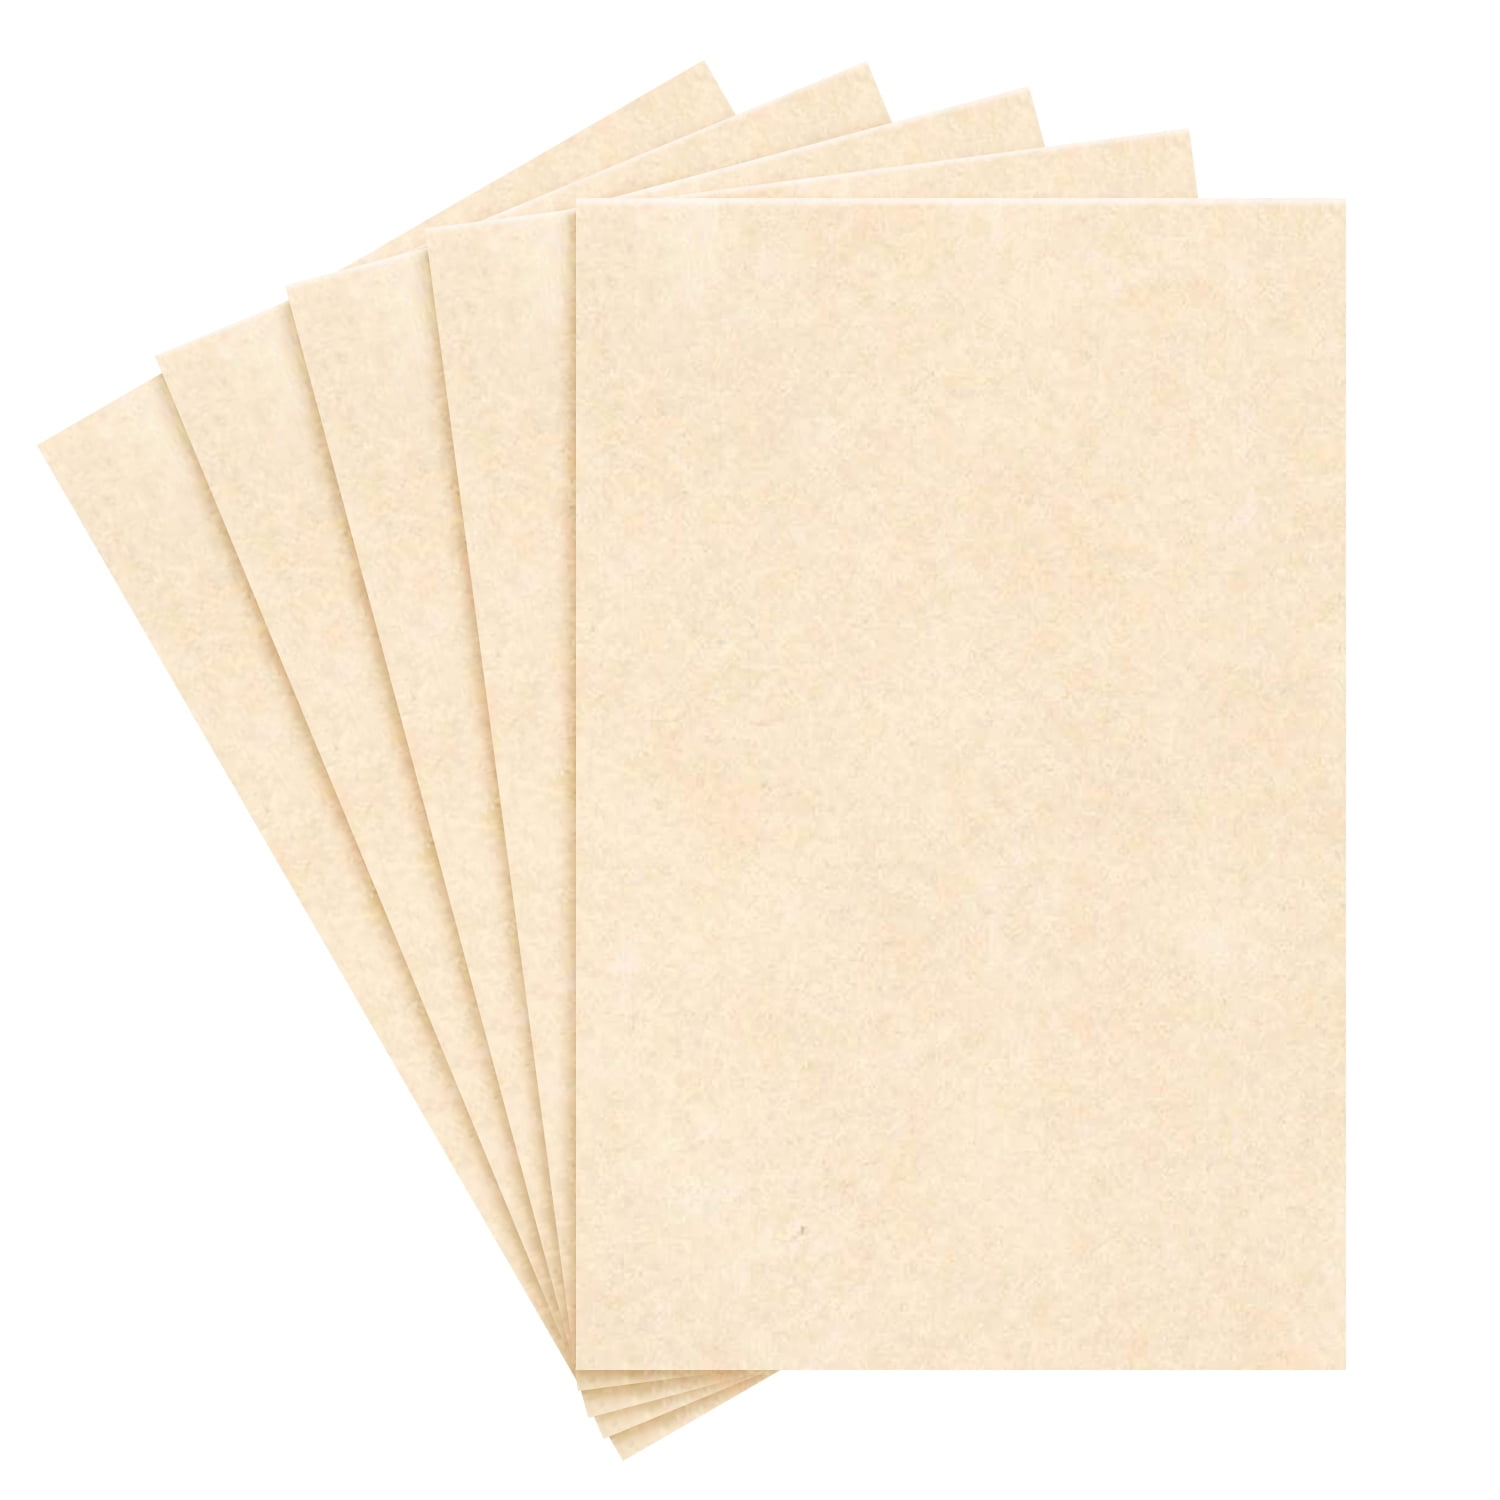 23 x 35 Large Size New White Parchment Paper, 24lb Bond / 60lb Text, 5 Qty